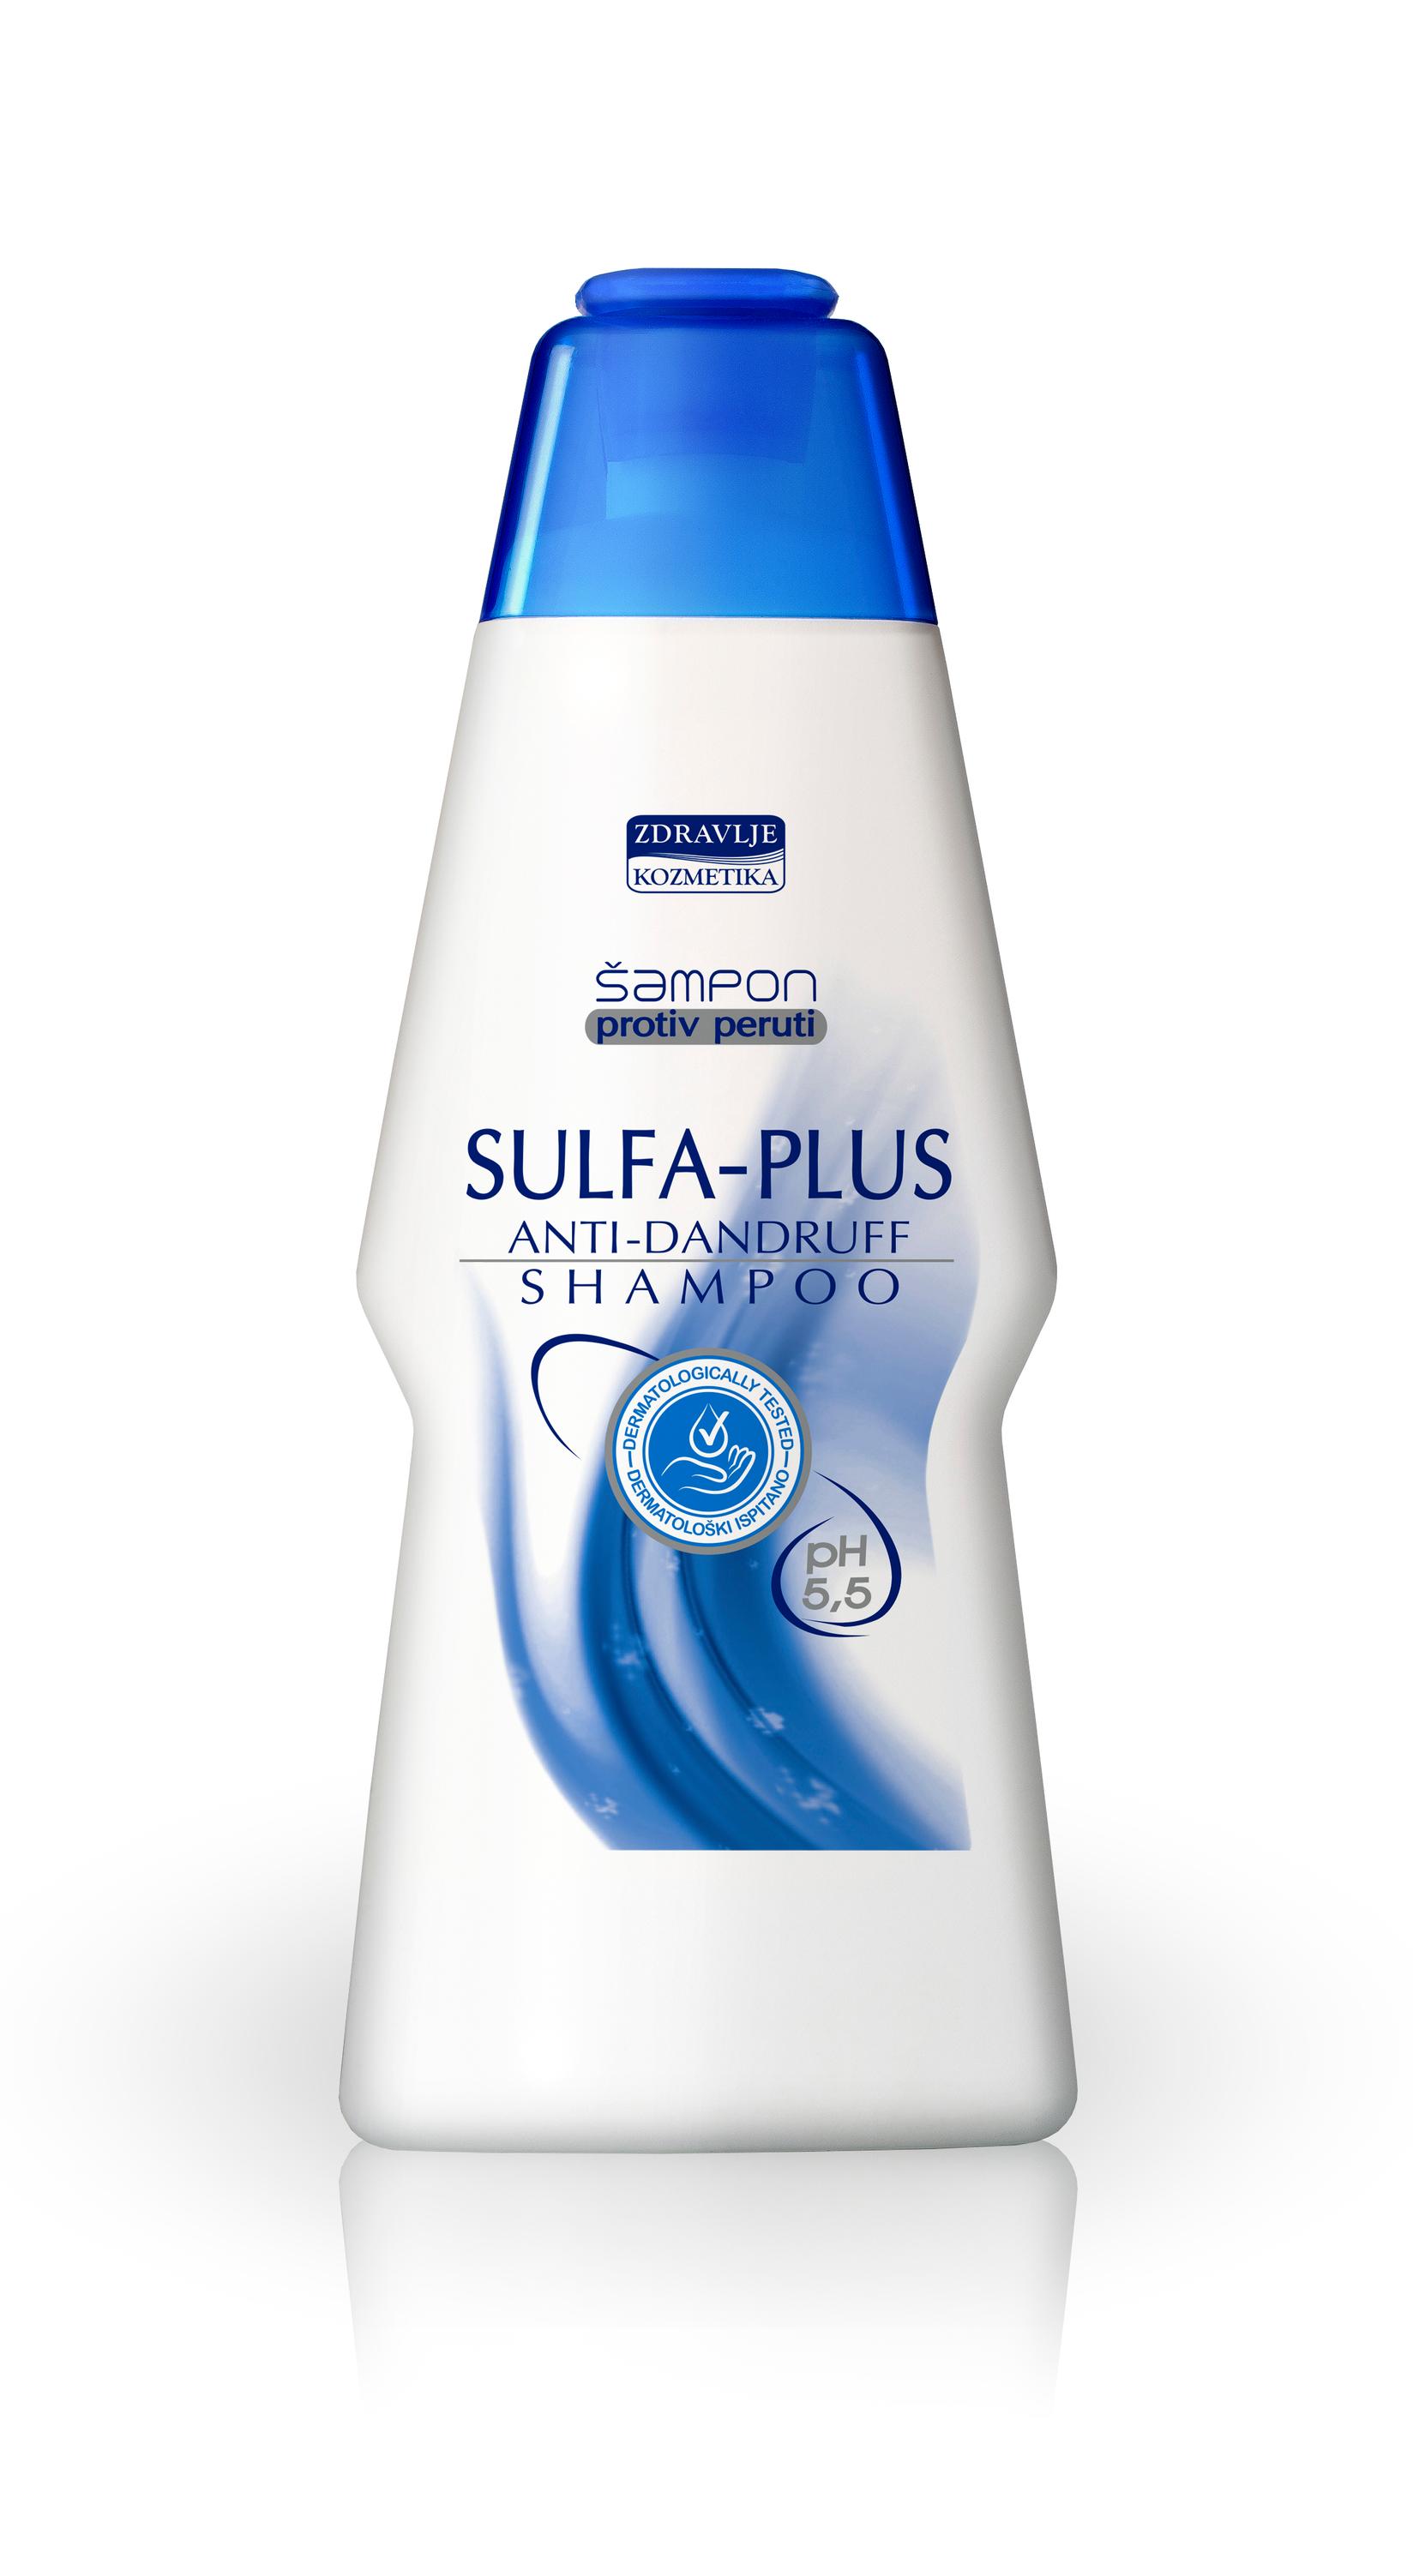 ZDRAVLJE KOZMETIKA Sulfa-Plus Šampon protiv peruti, 200 ml